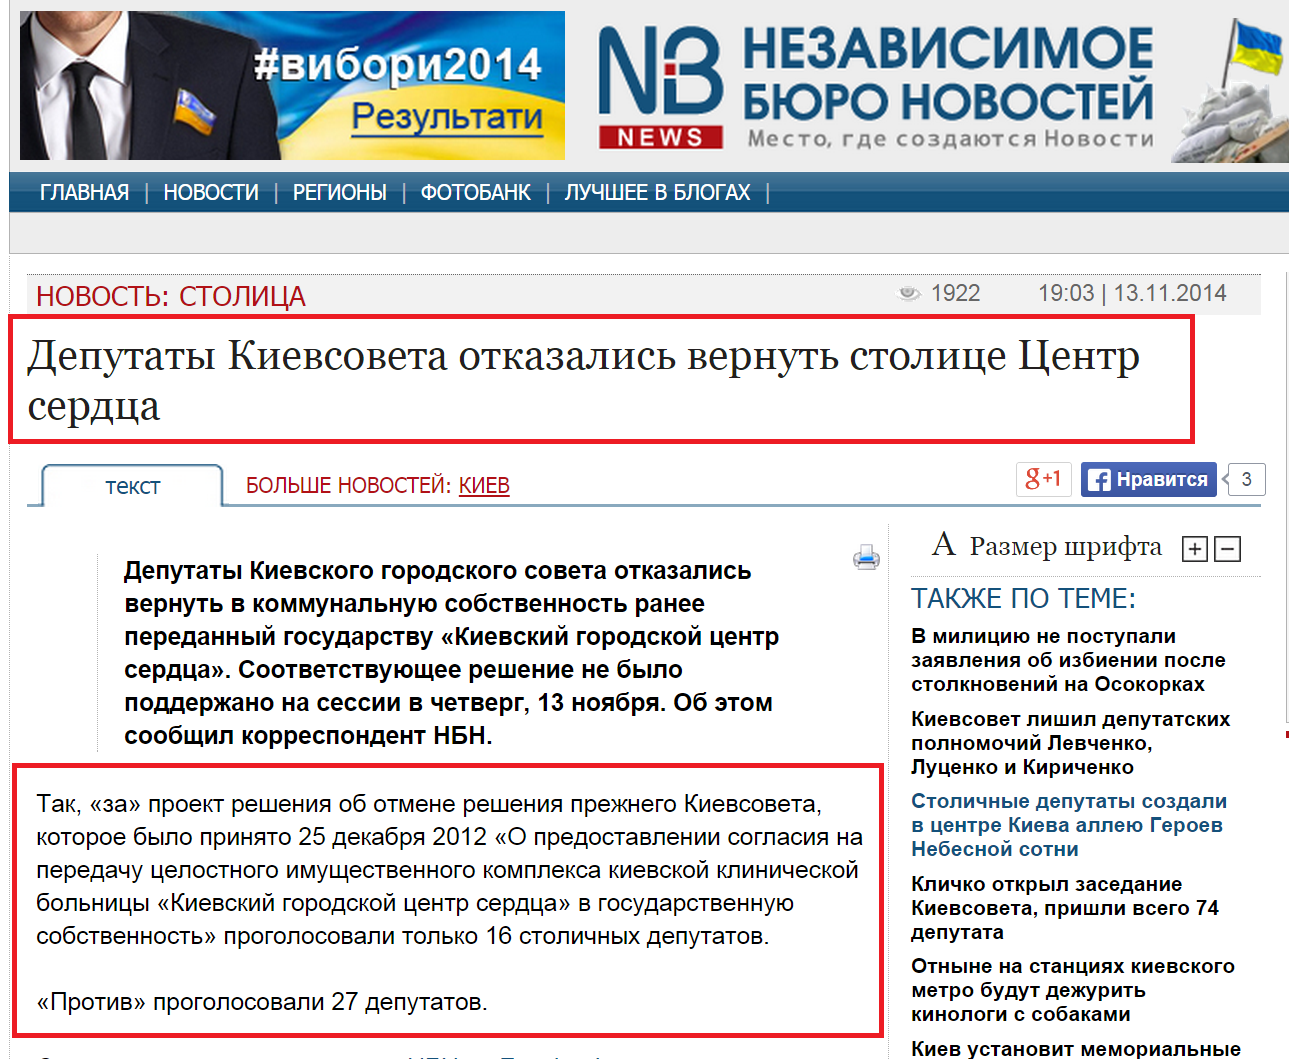 http://nbnews.com.ua/ru/news/136611/